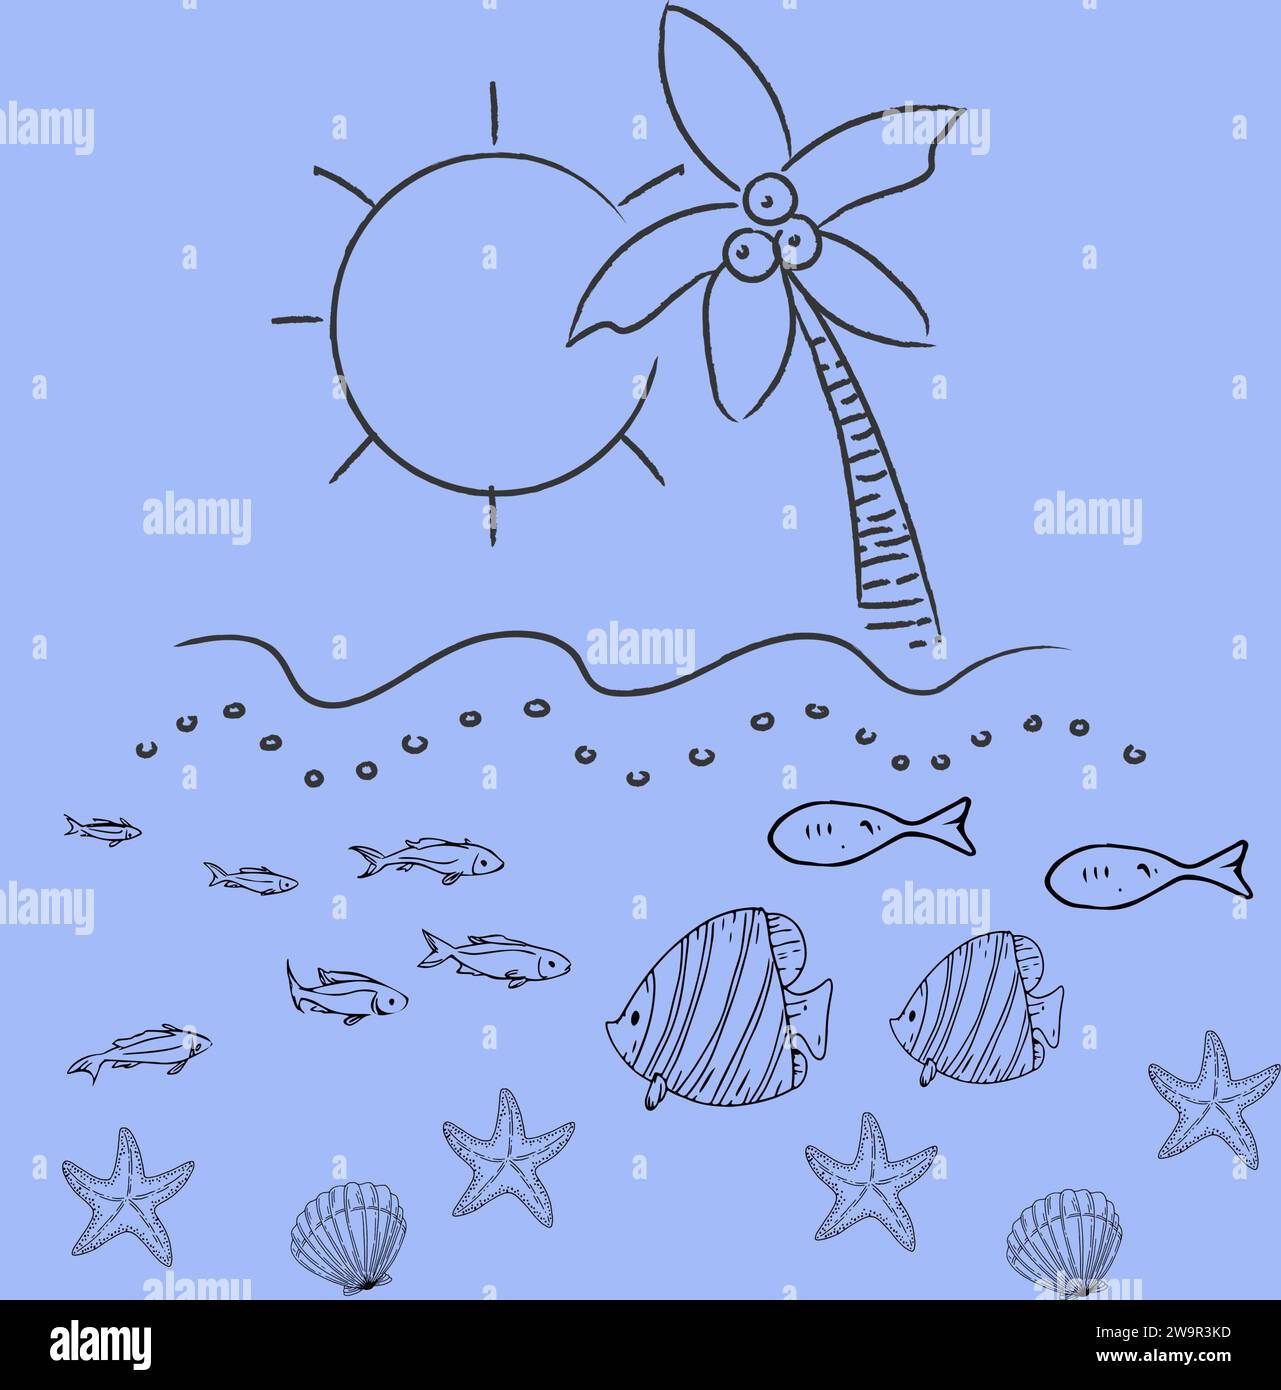 Die Sonne und das Meer. Eine einfache Zeichnung von Meeresbewohnern. Die untergehende Sonne und das Meer mit seinen Kreaturen. Stock Vektor